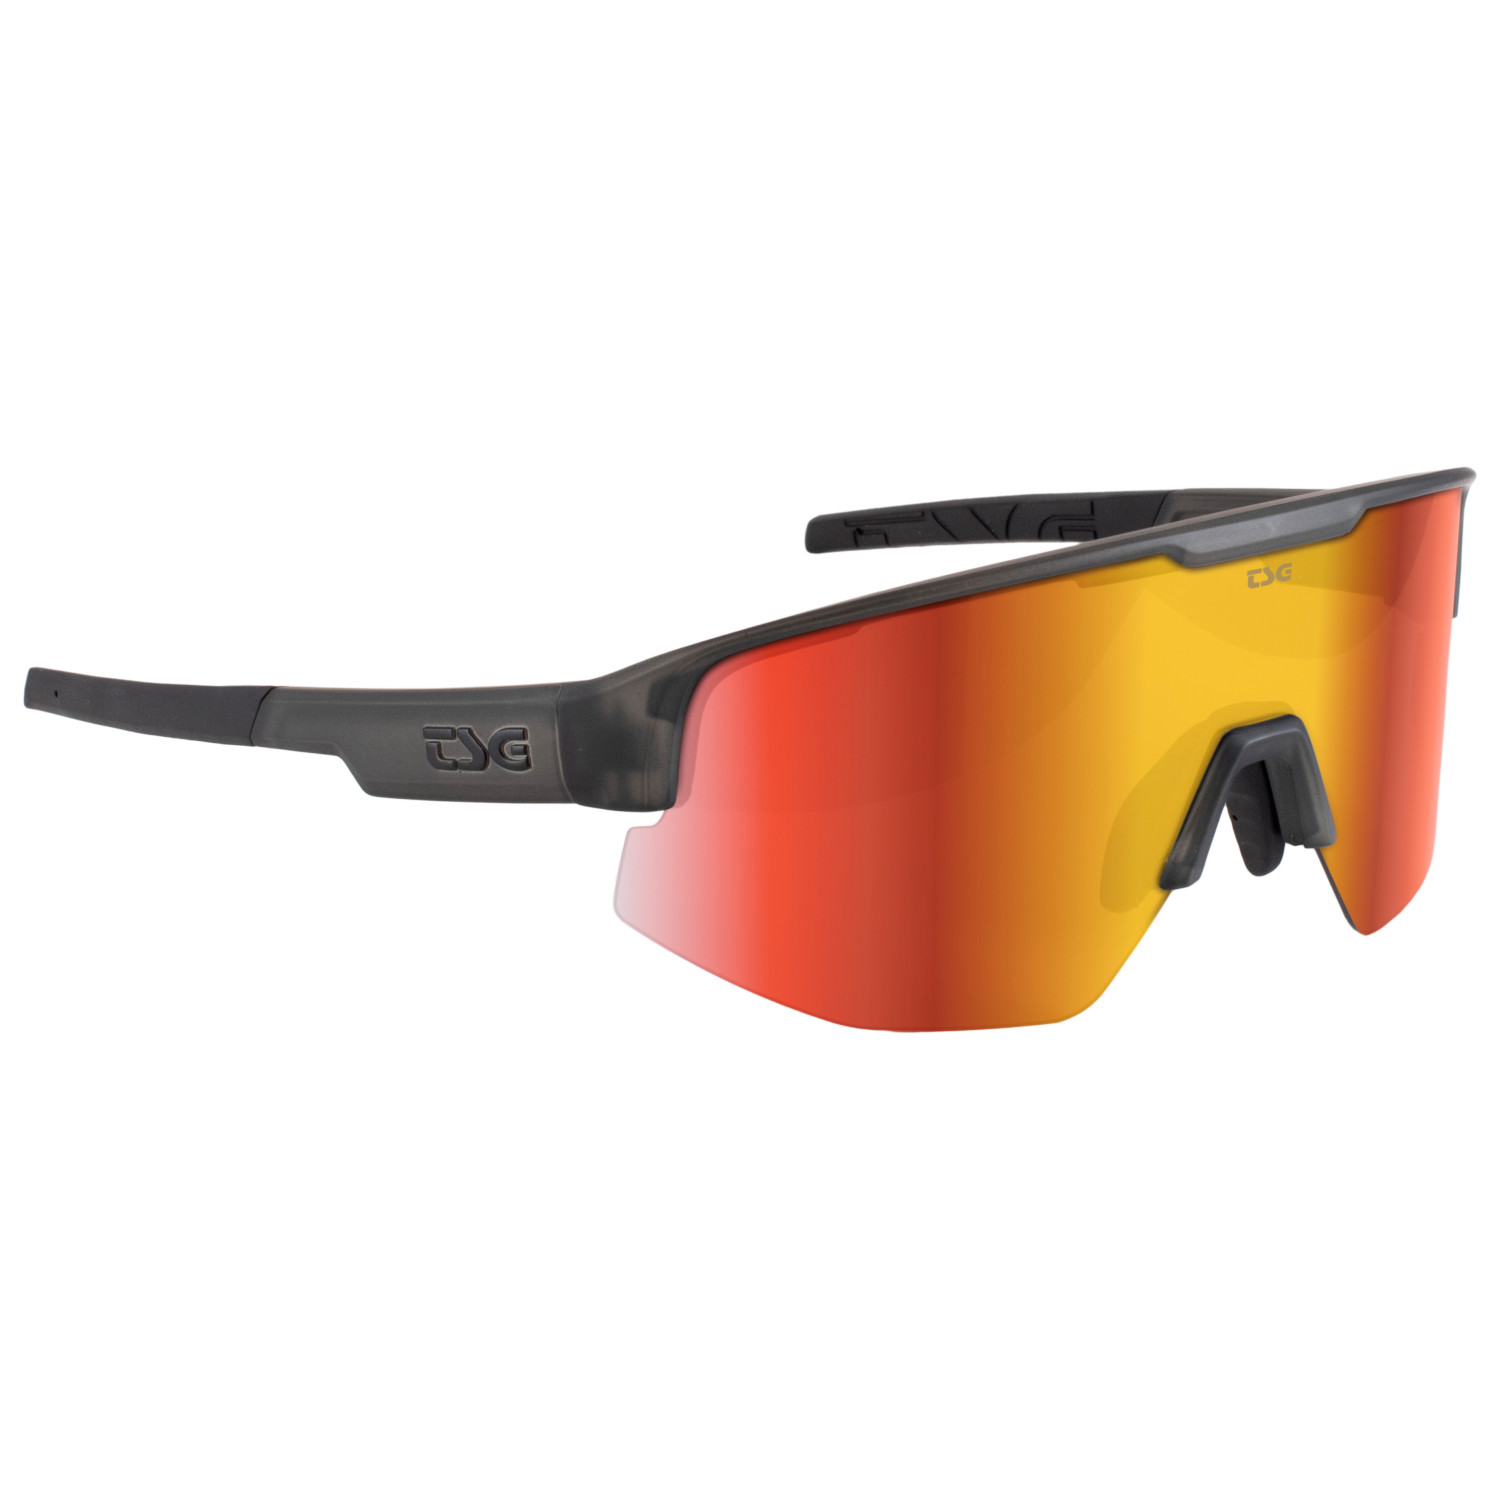 Велосипедные очки Tsg Loam Sunglasses, цвет Smoke Grey Clear фотографии